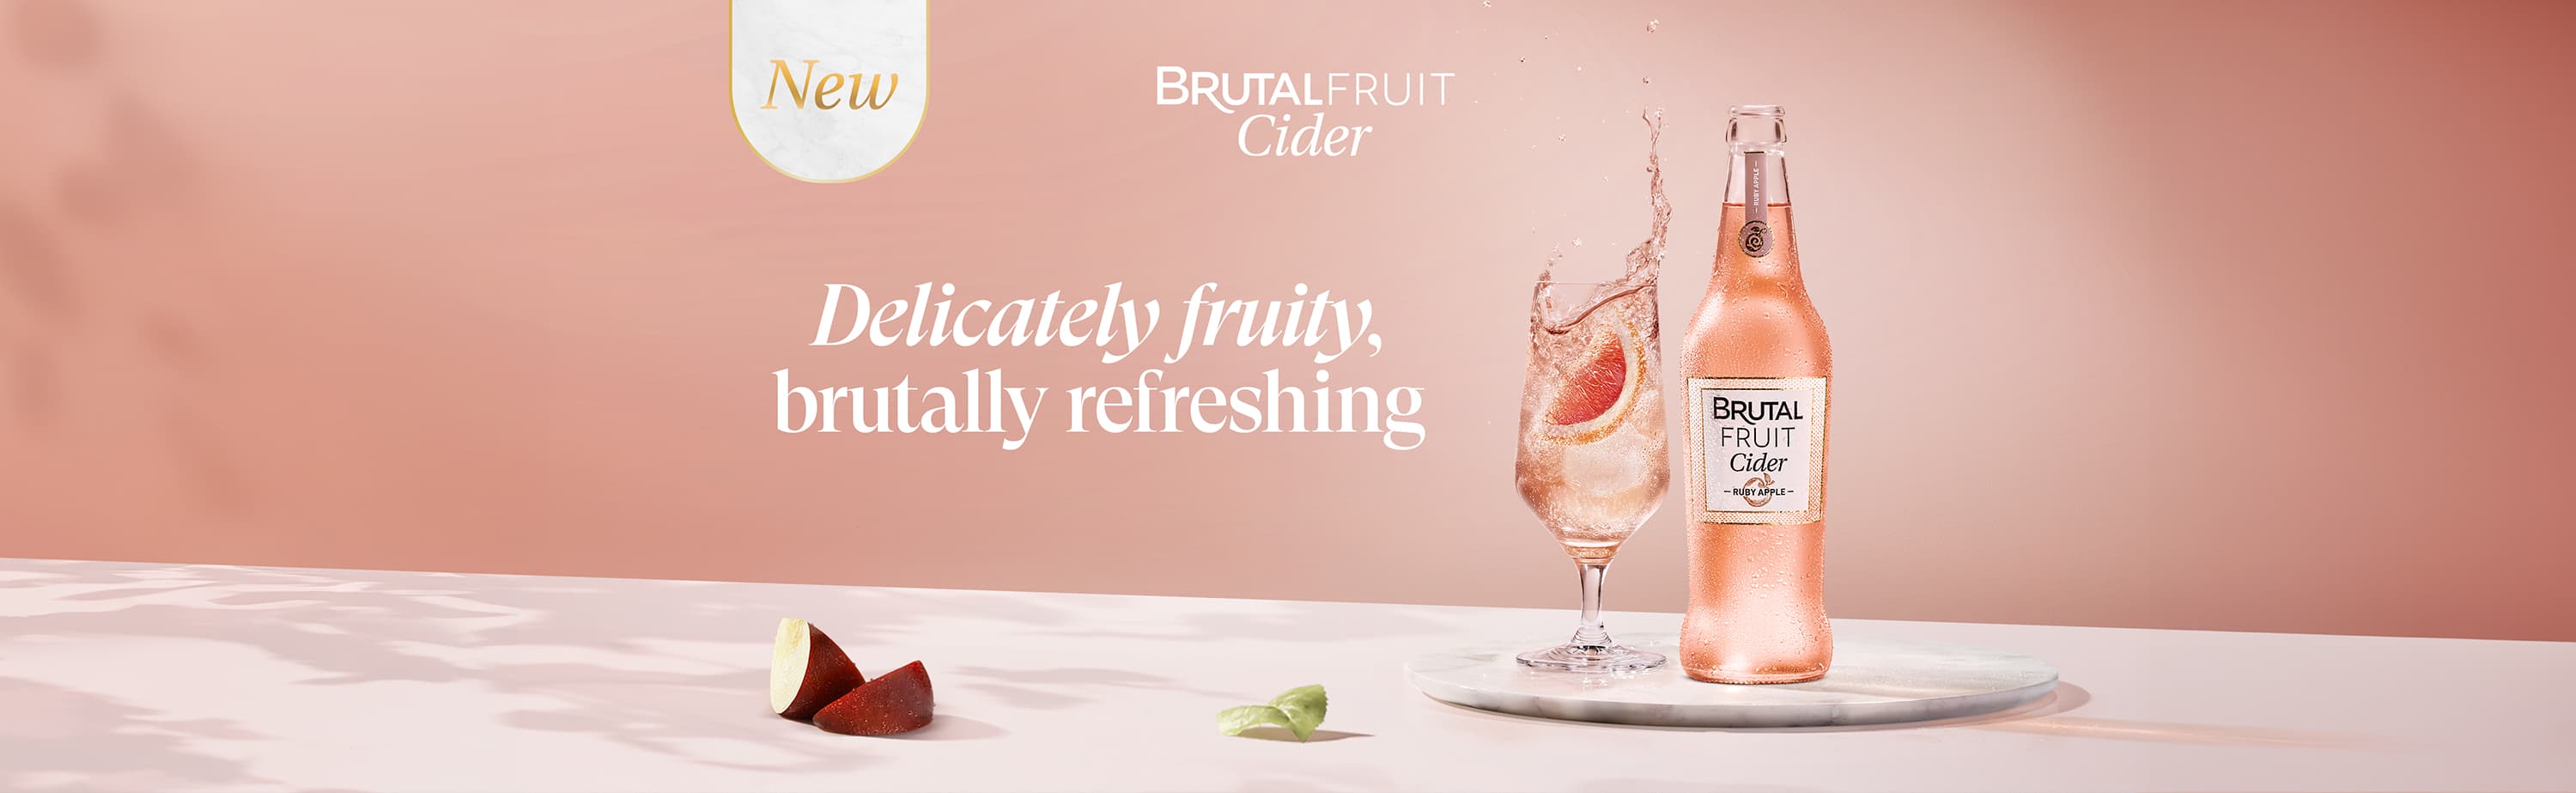 Brutal Fruit Cider - Delicately fruity, brutally refreshing